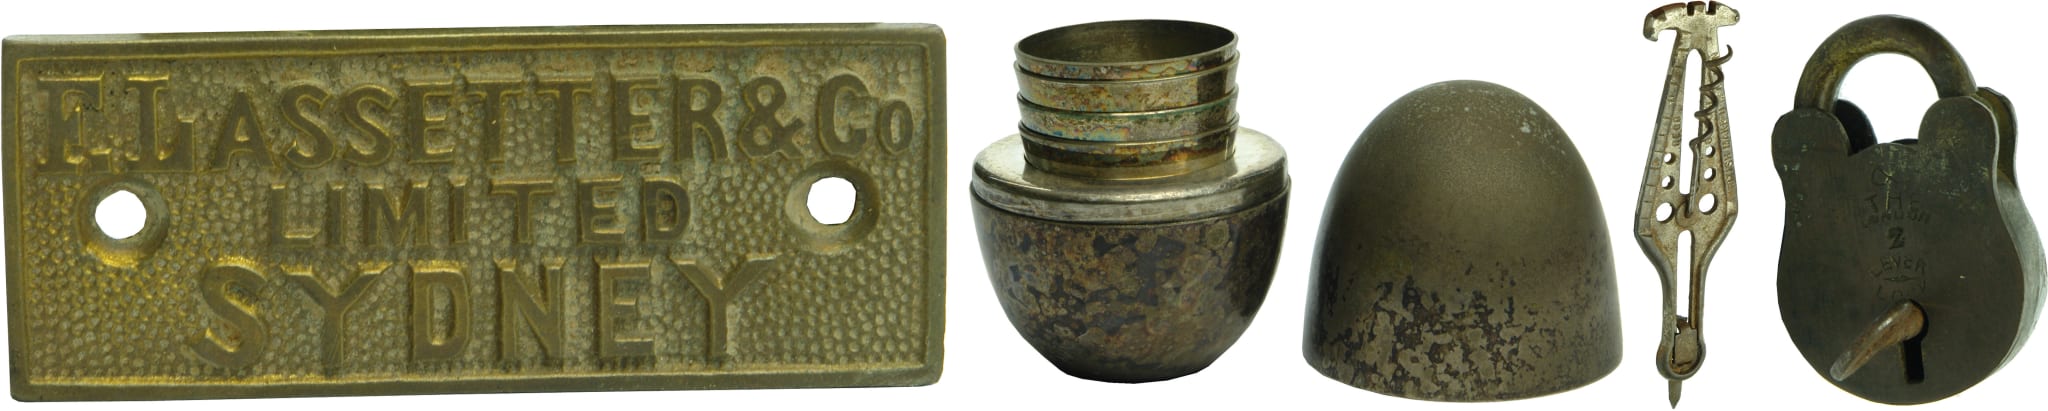 Metalware Antique Items